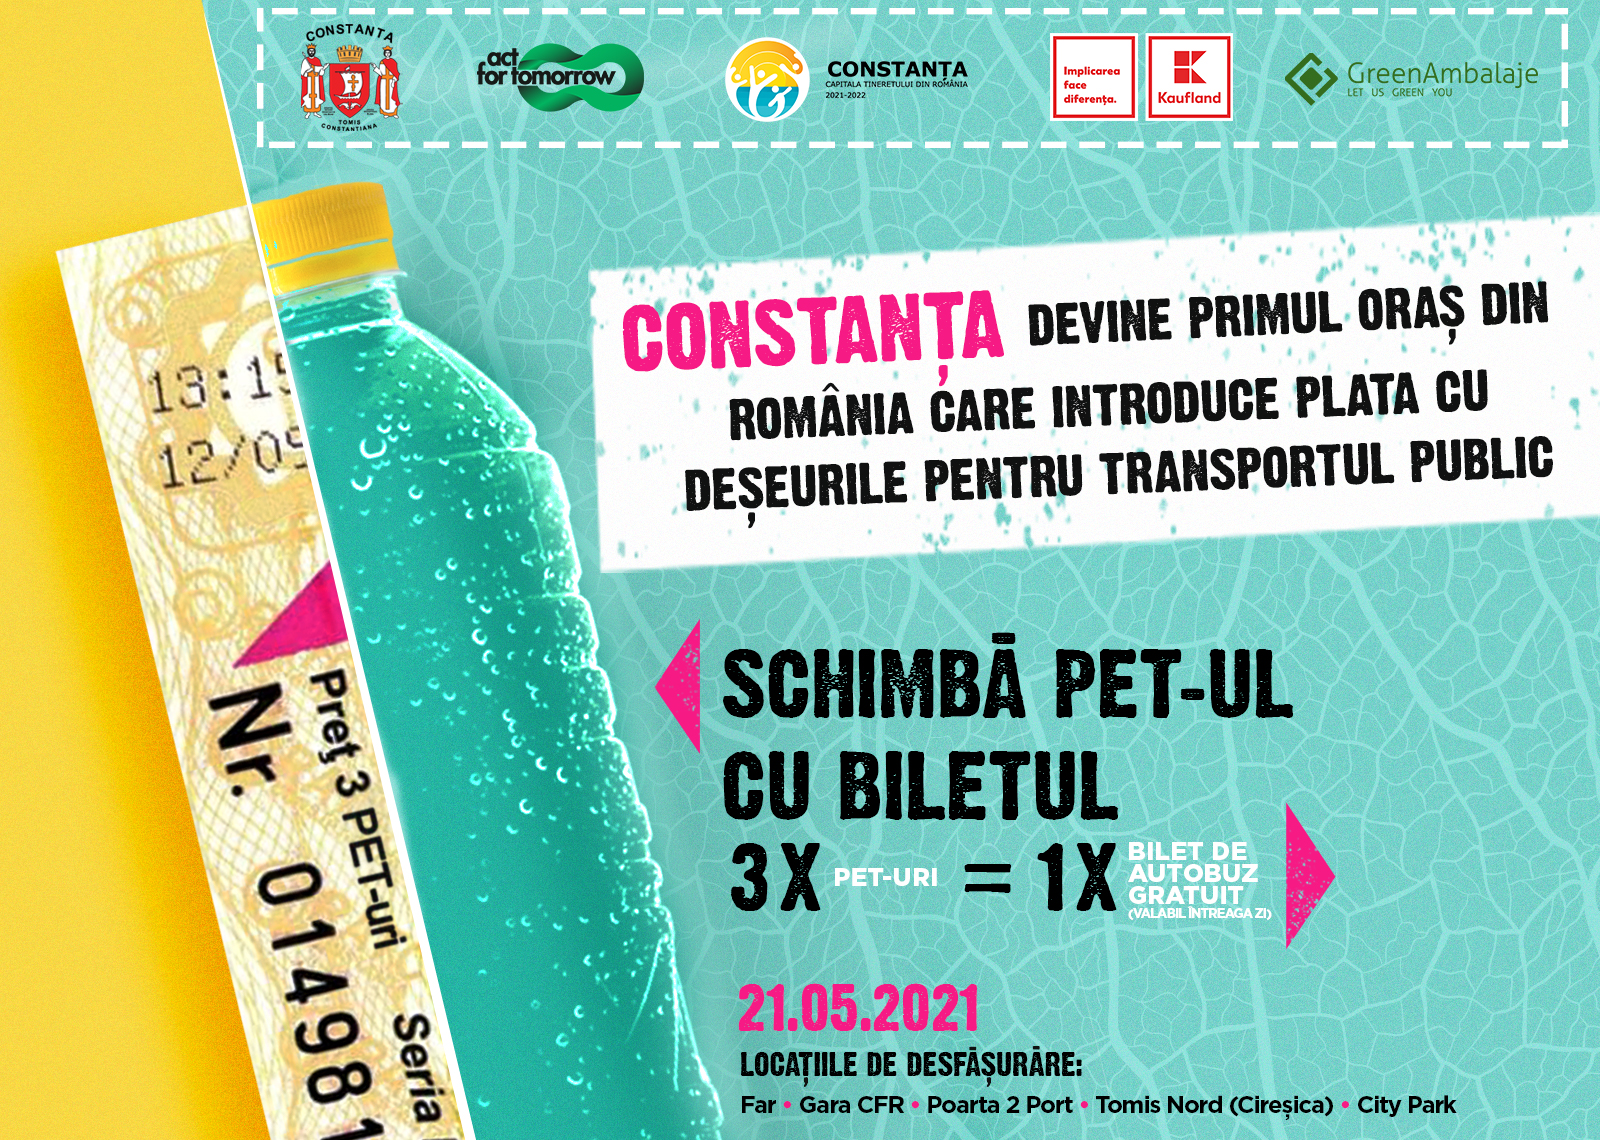 Constanța devine primul oraş din România care introduce plata cu deşeurile pentru transportul public